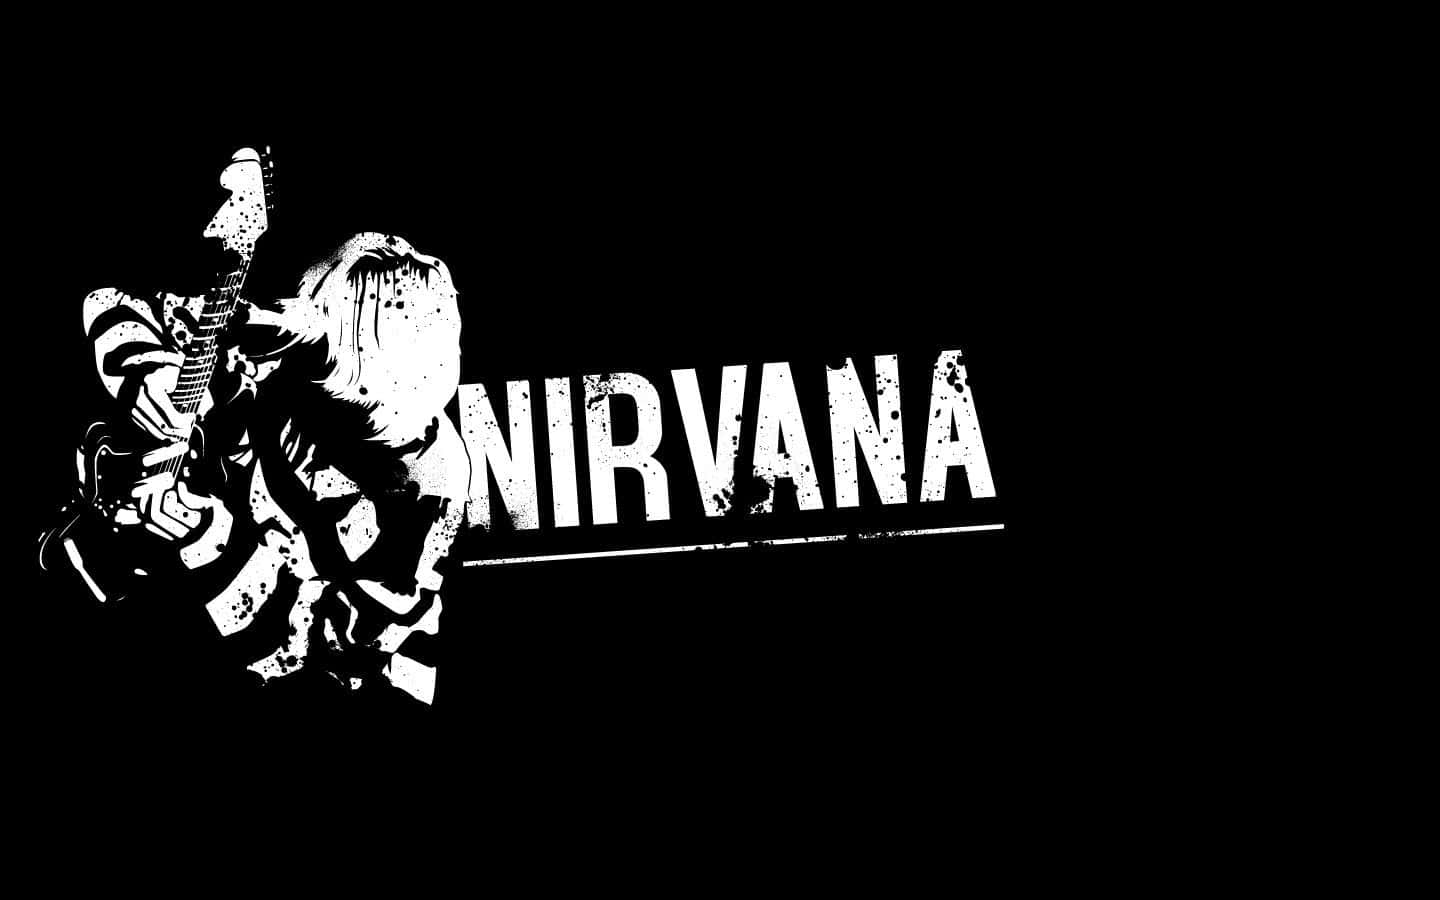 Elicónico Logotipo De La Cara Sonriente De Nirvana En Un Fondo De Pared Grunge.